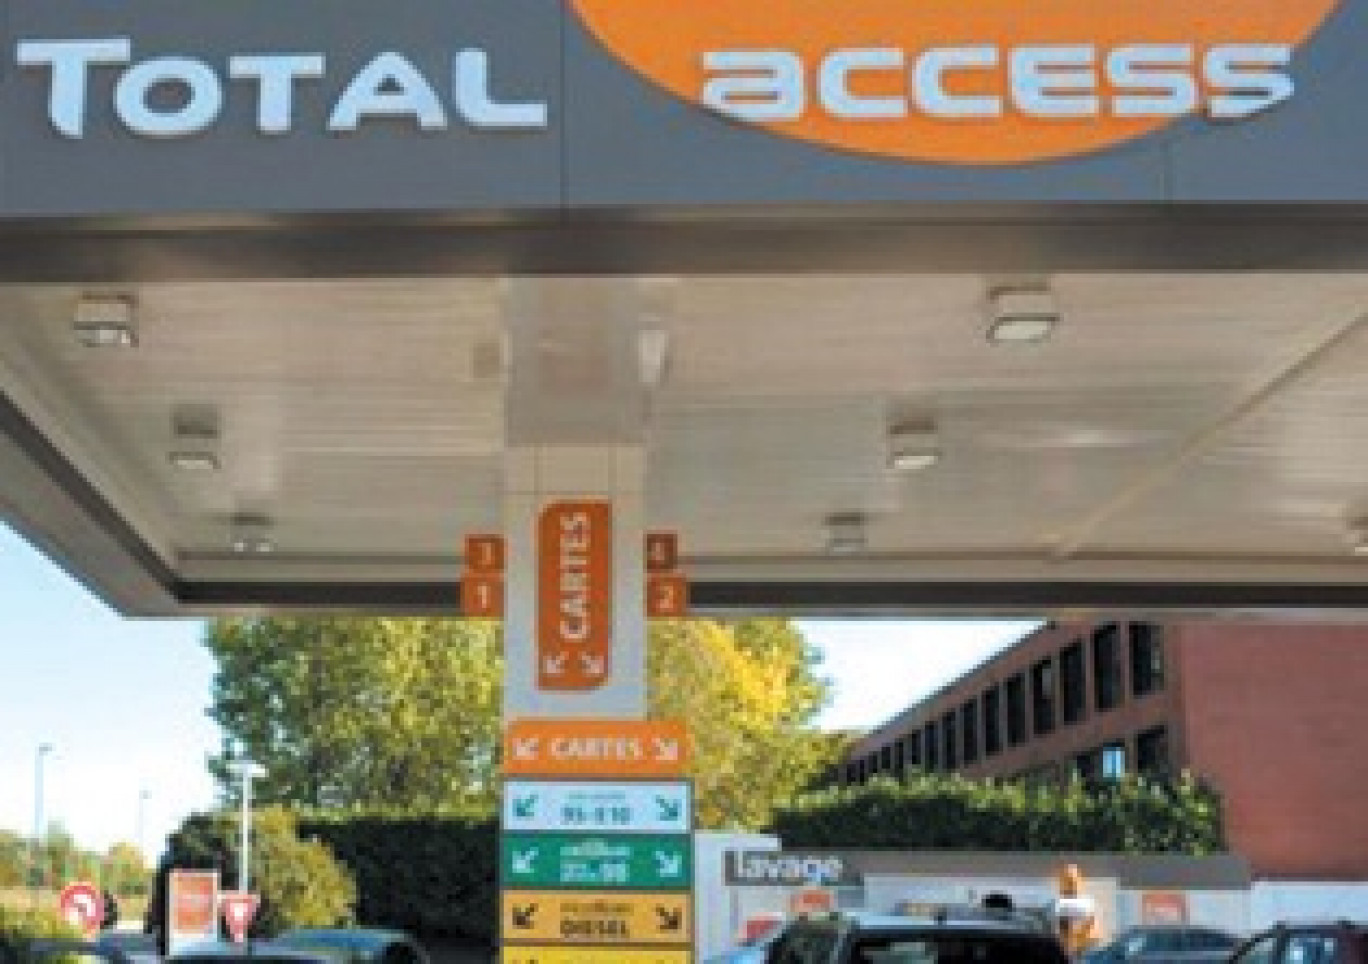 Le groupe pétrolier Total vient d’ouvrir une station Total access sur la départementale 36D à Pagny-sur-Meuse. 600 stations de ce type sont annoncées d’ici à 2014.